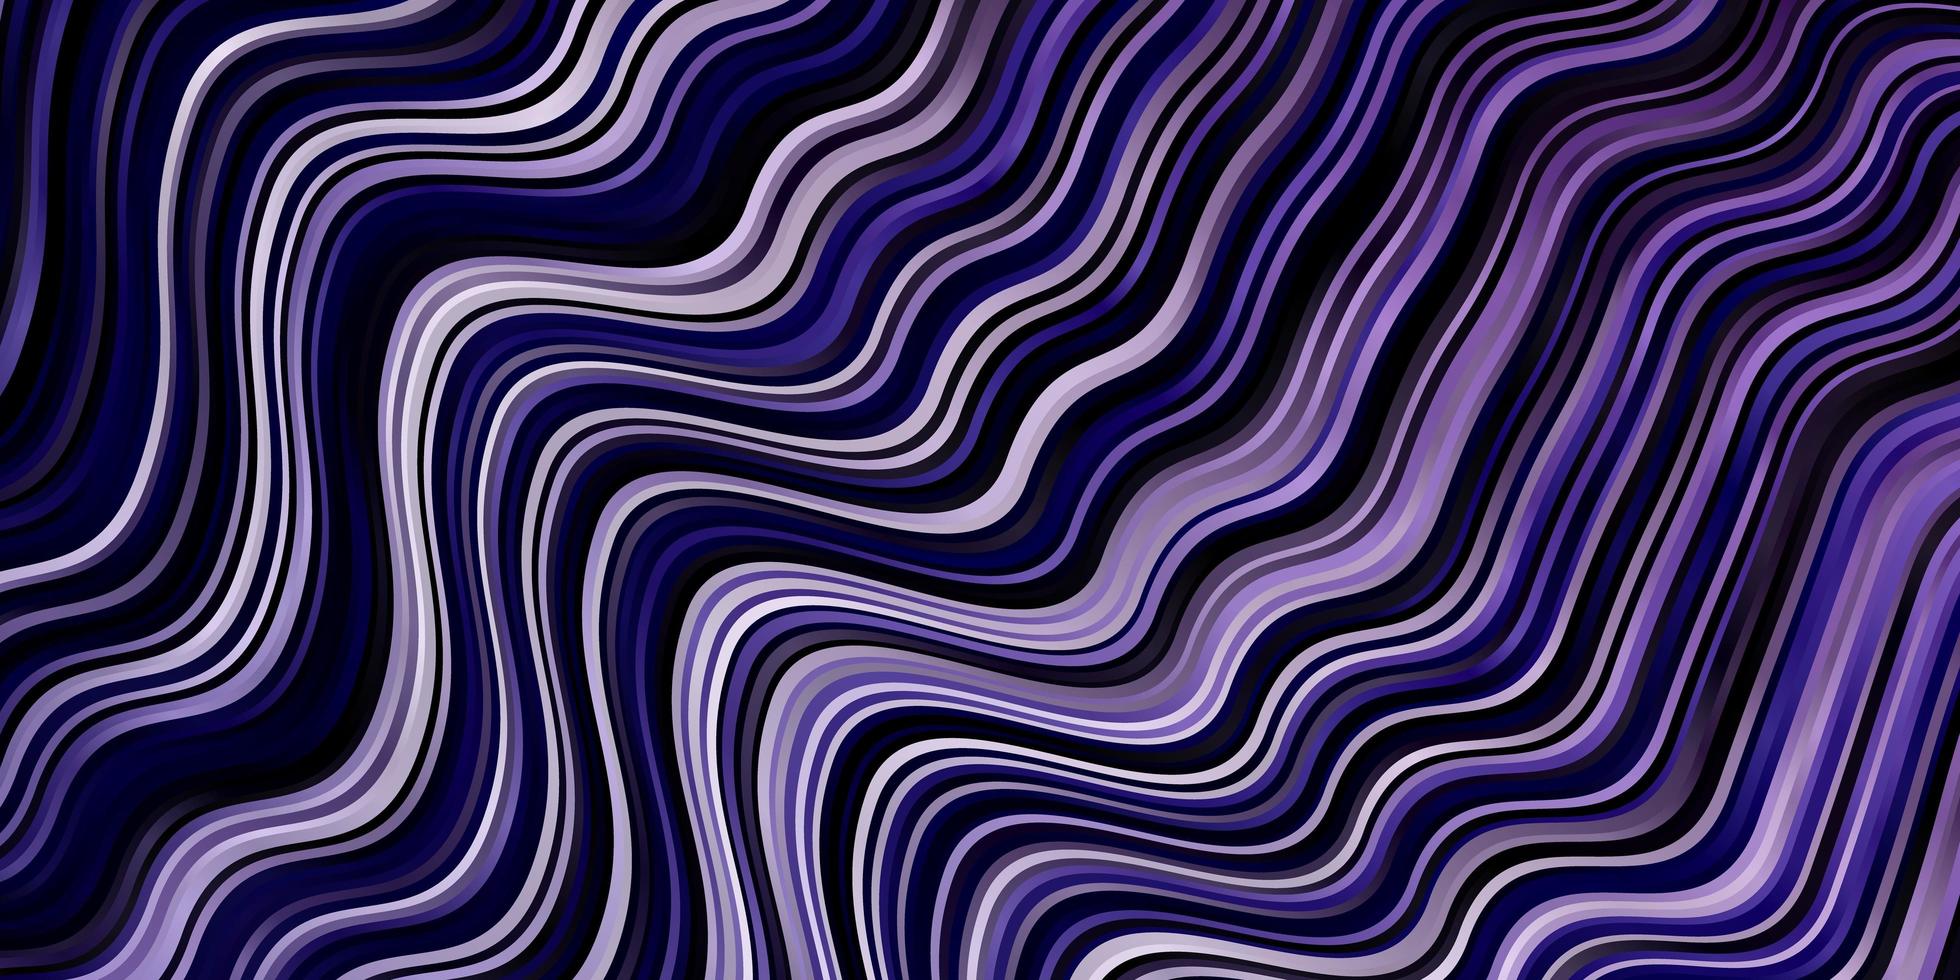 Fondo de vector púrpura claro con líneas torcidas.